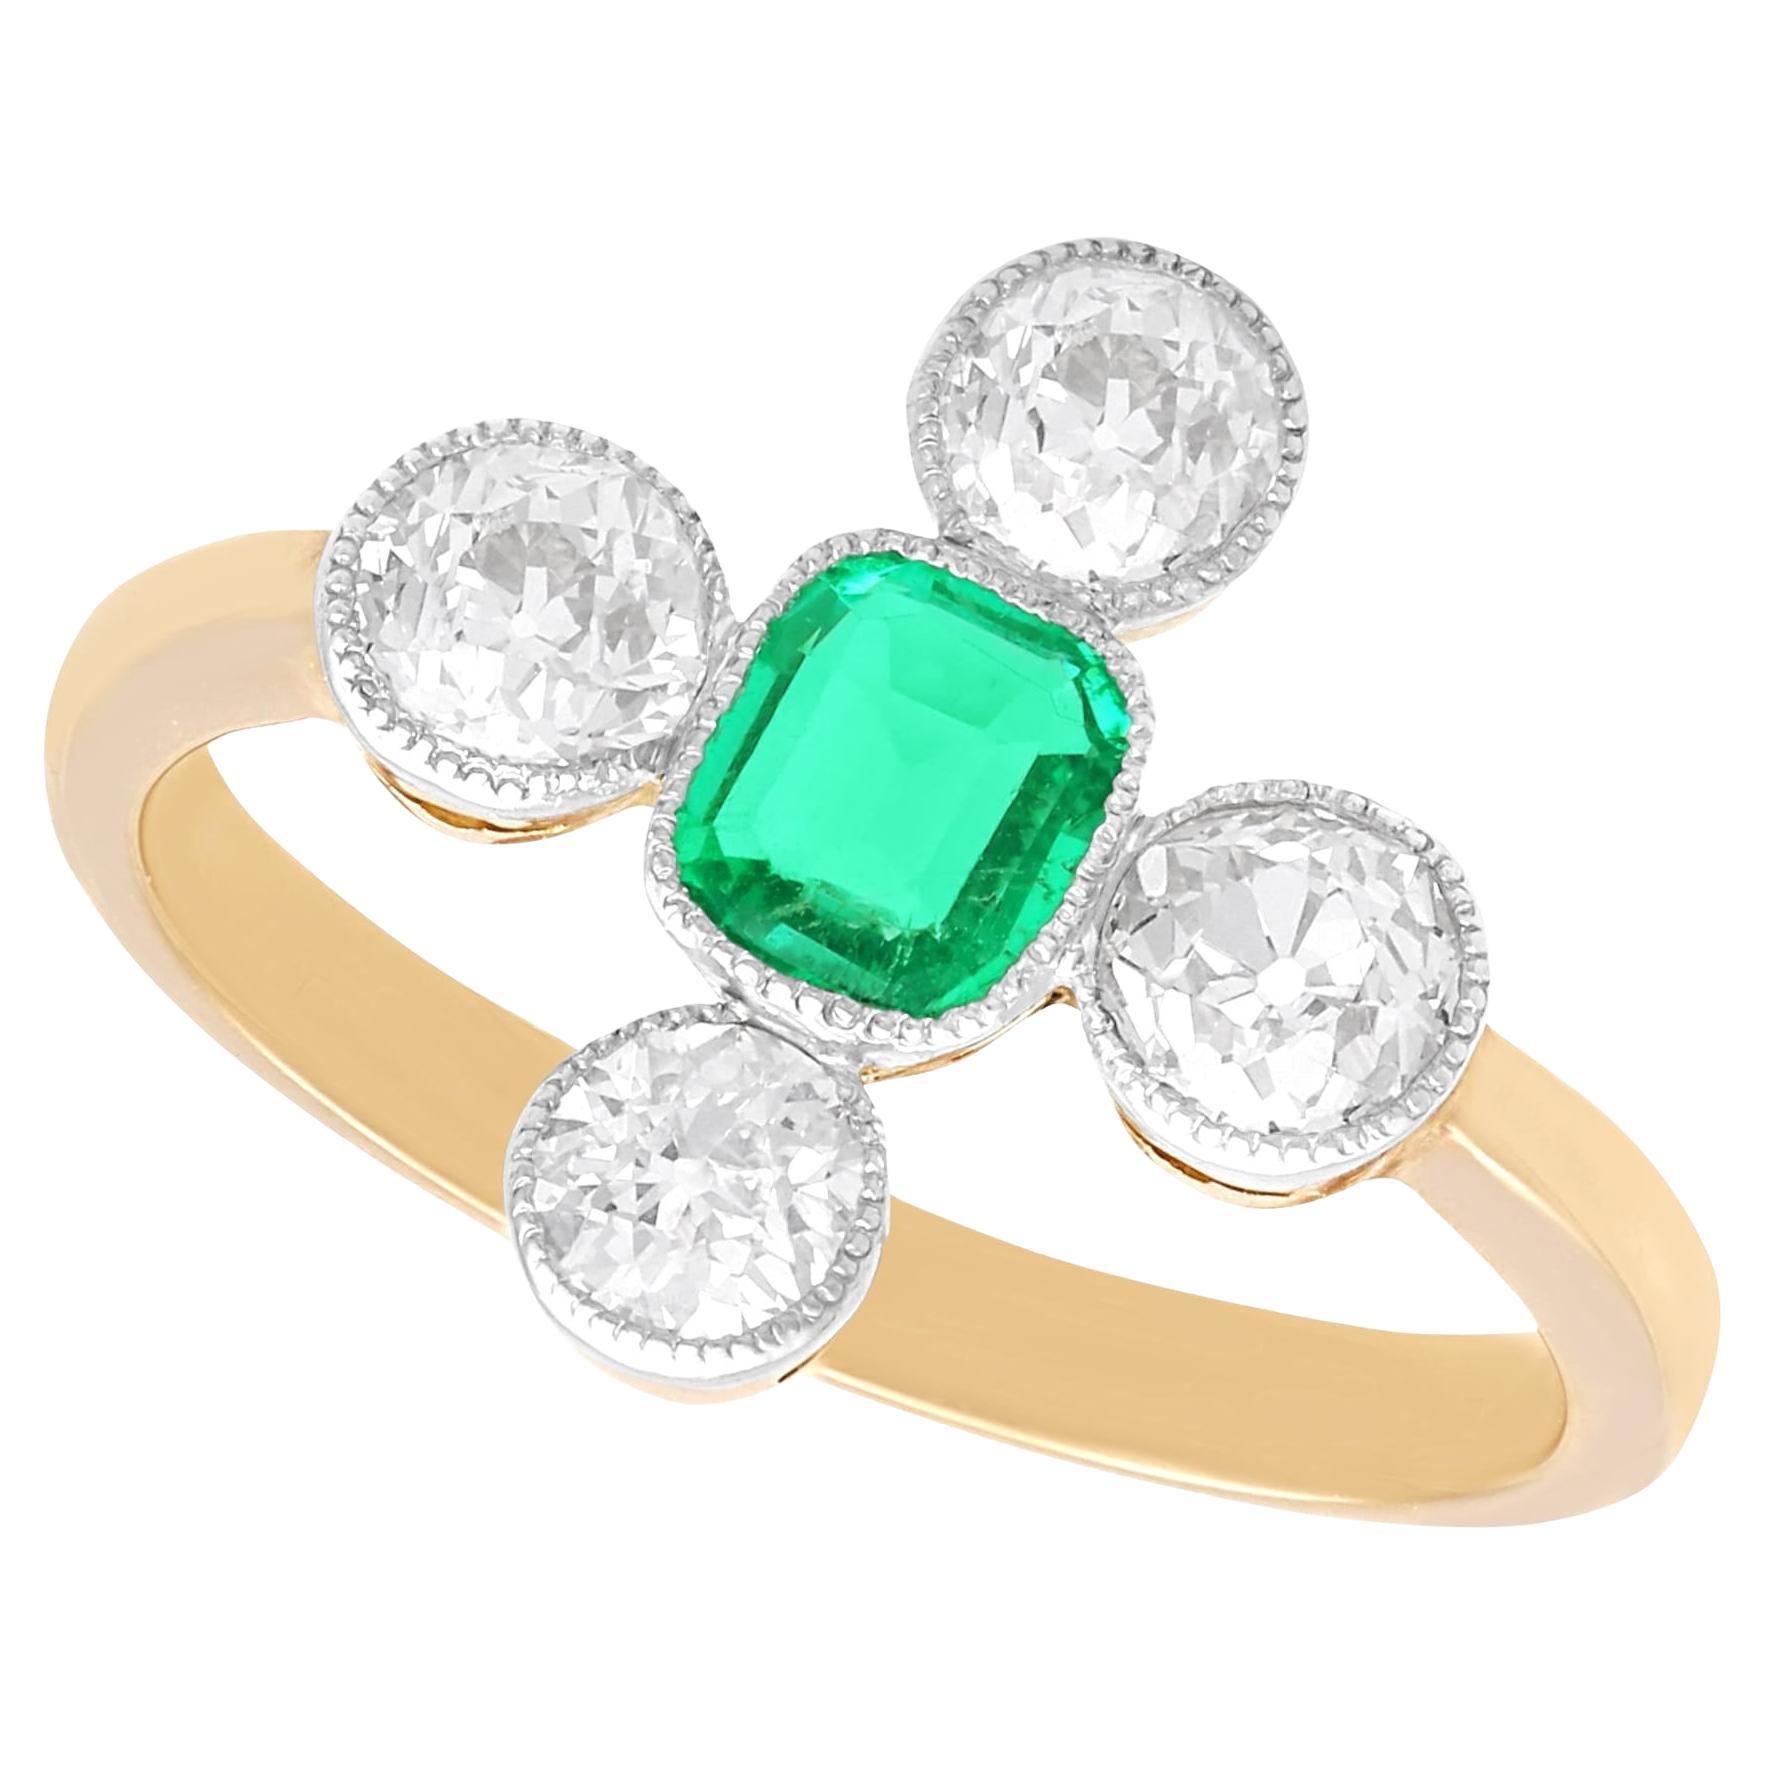 1920s 0.42 Carat Emerald and 1.20 Carat Diamond 12K Yellow Gold Dress Ring